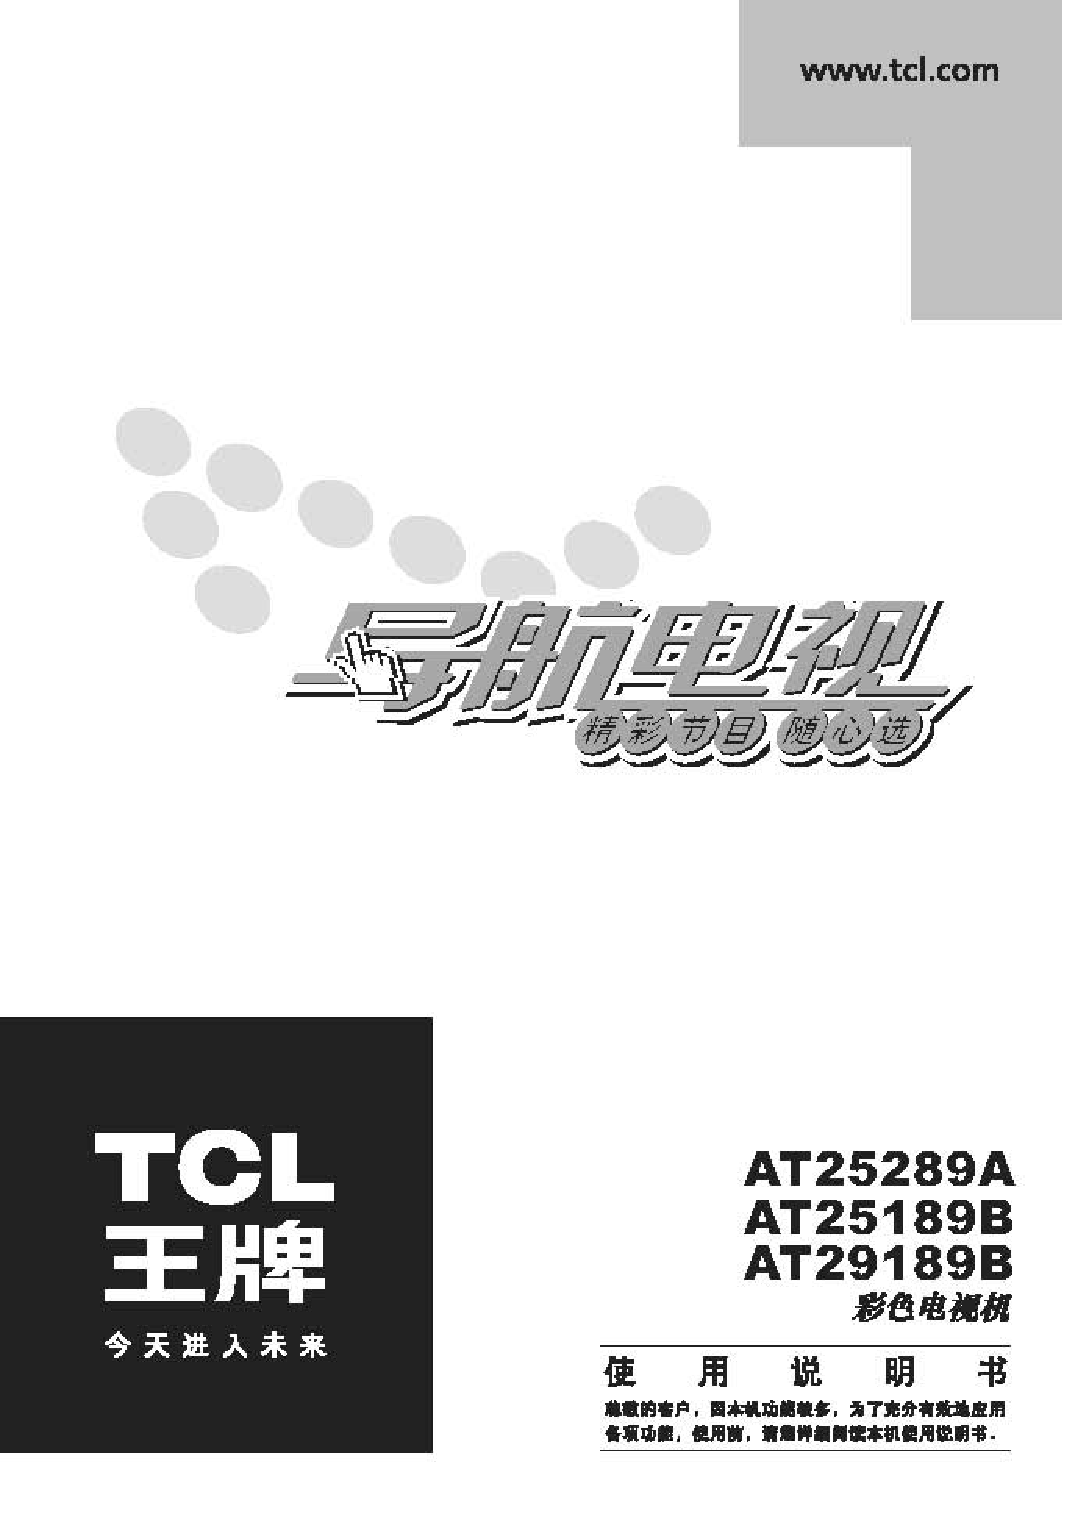 TCL AT25189B 使用说明书 封面